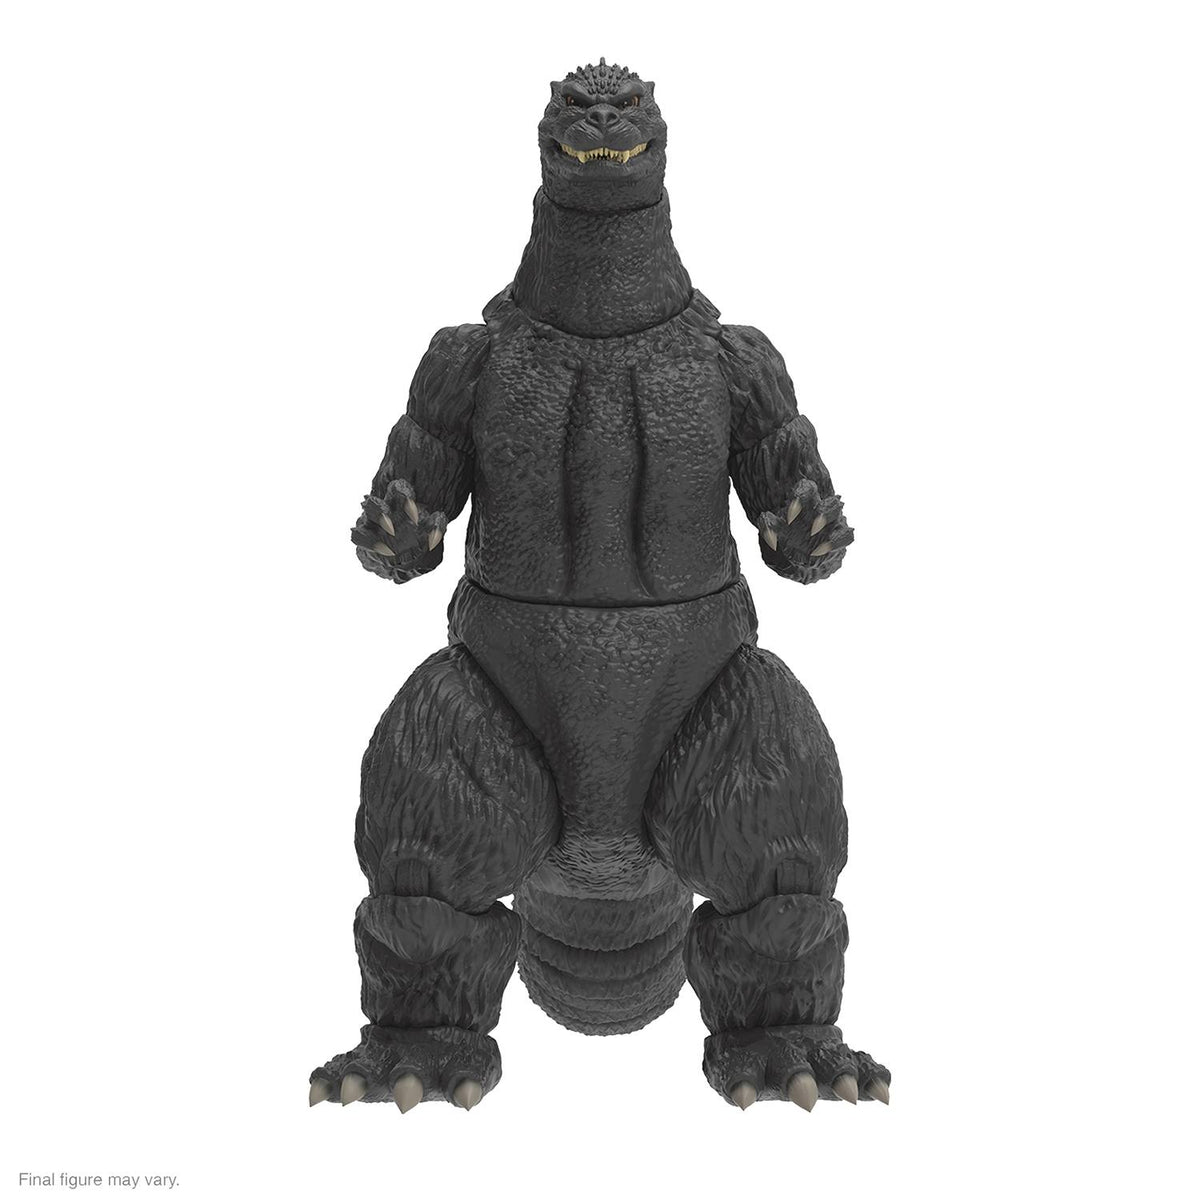 TOHO Ultimates Wave 1 - Heisei Godzilla